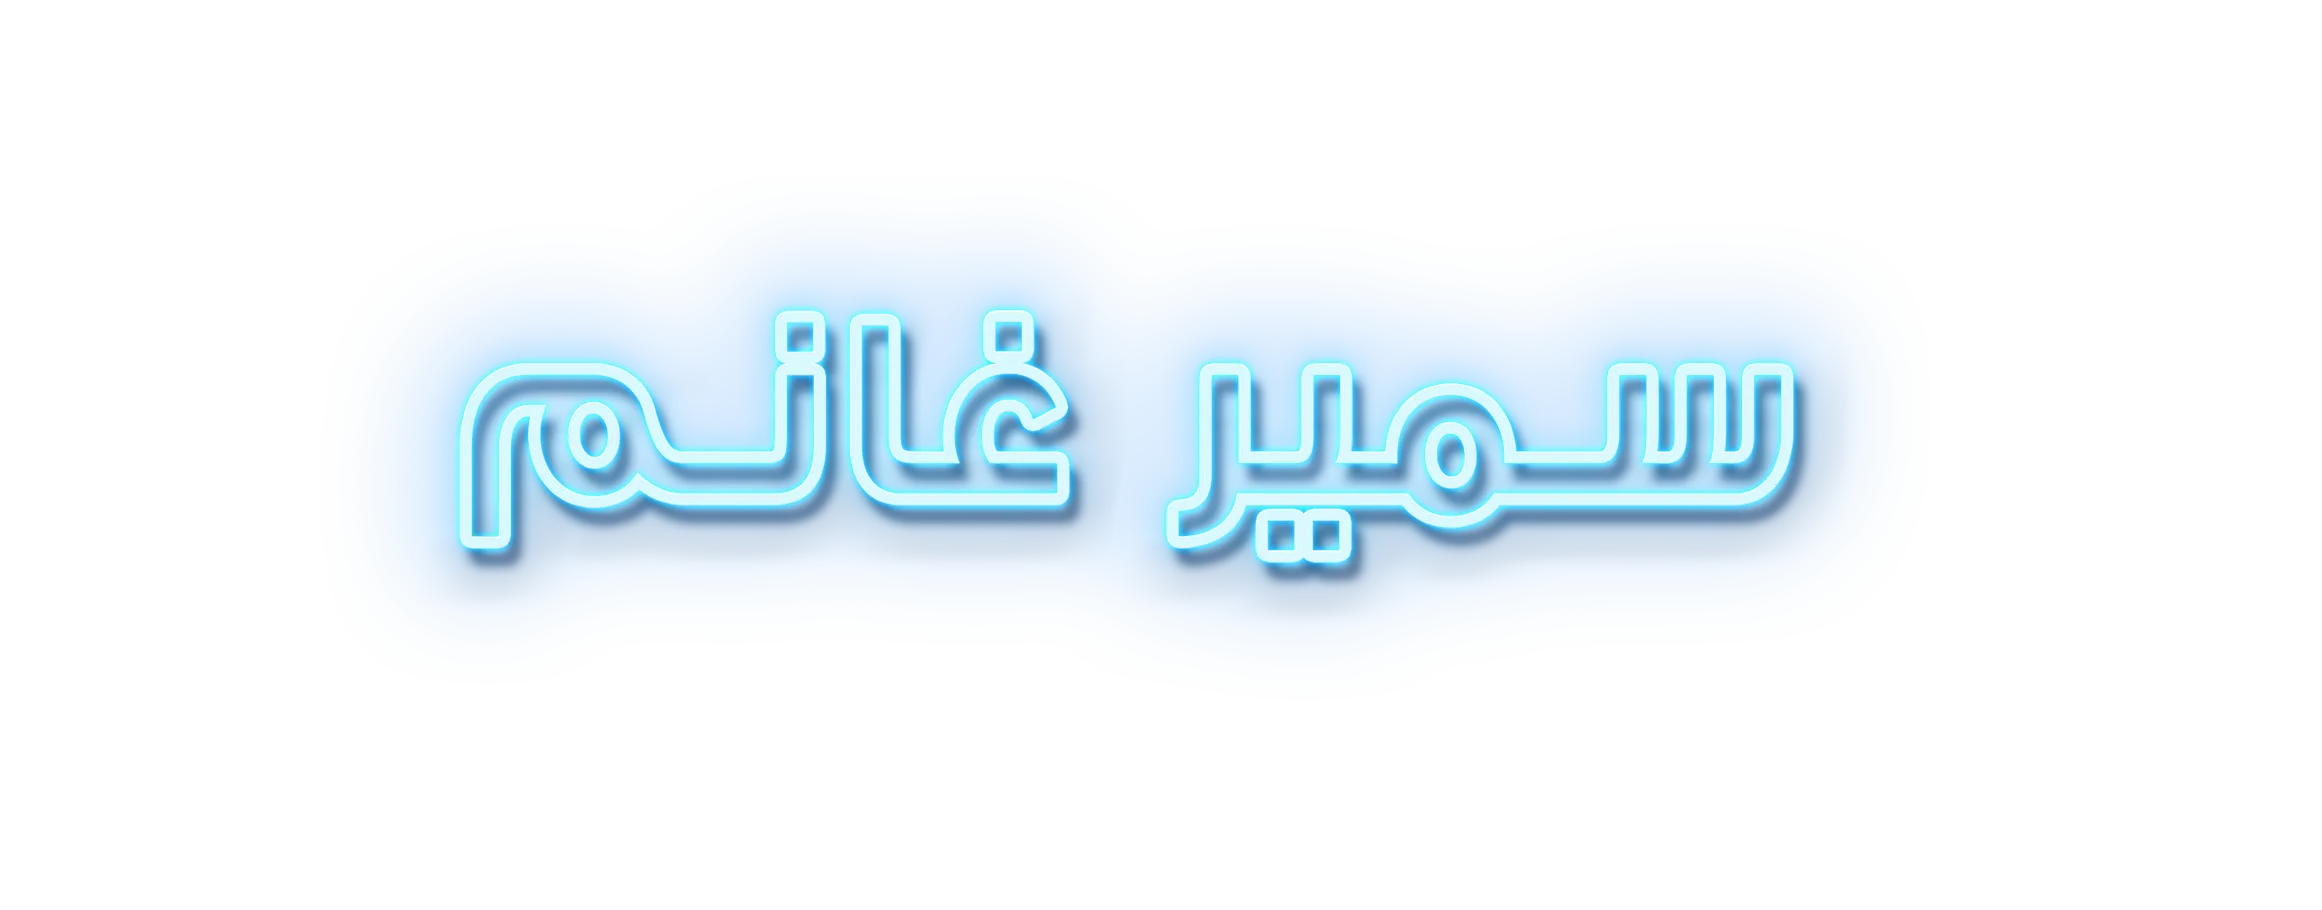 شبكة راديو وتلفزيون العرب: ART TV , Arab Radio and Television Network- ART TV